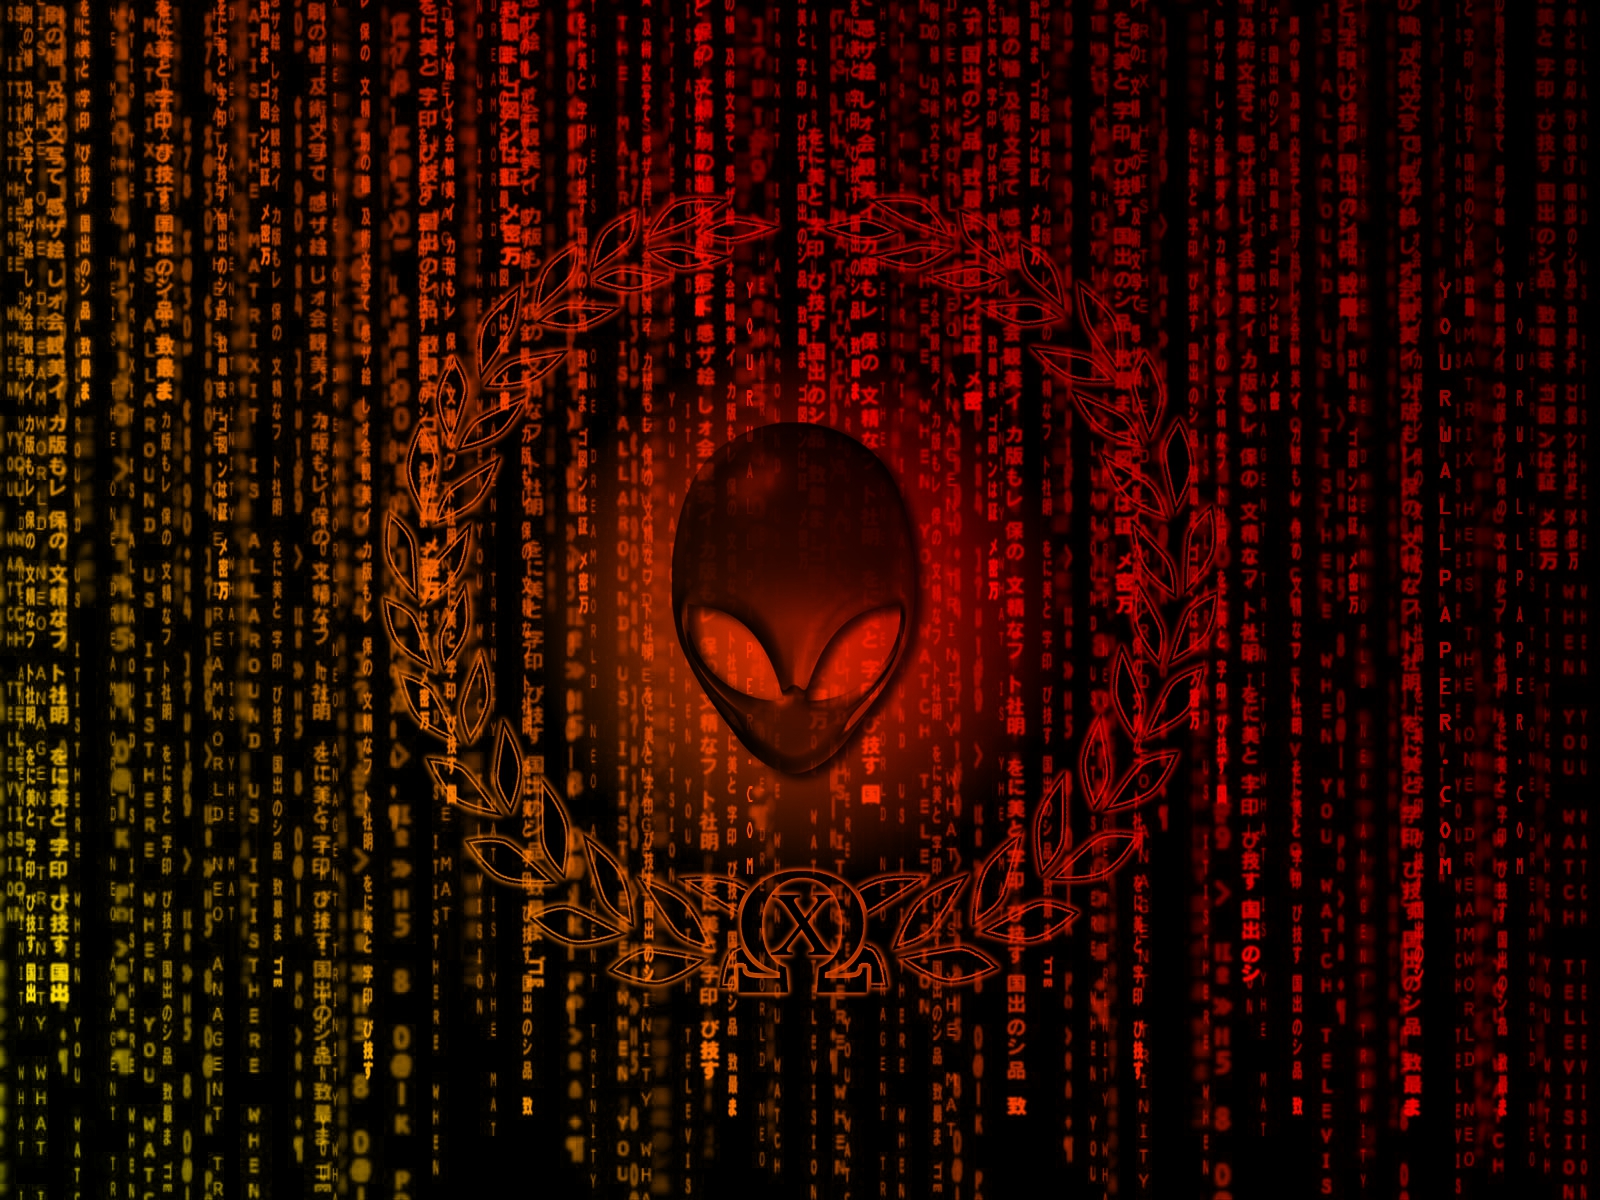 alienware desktop background